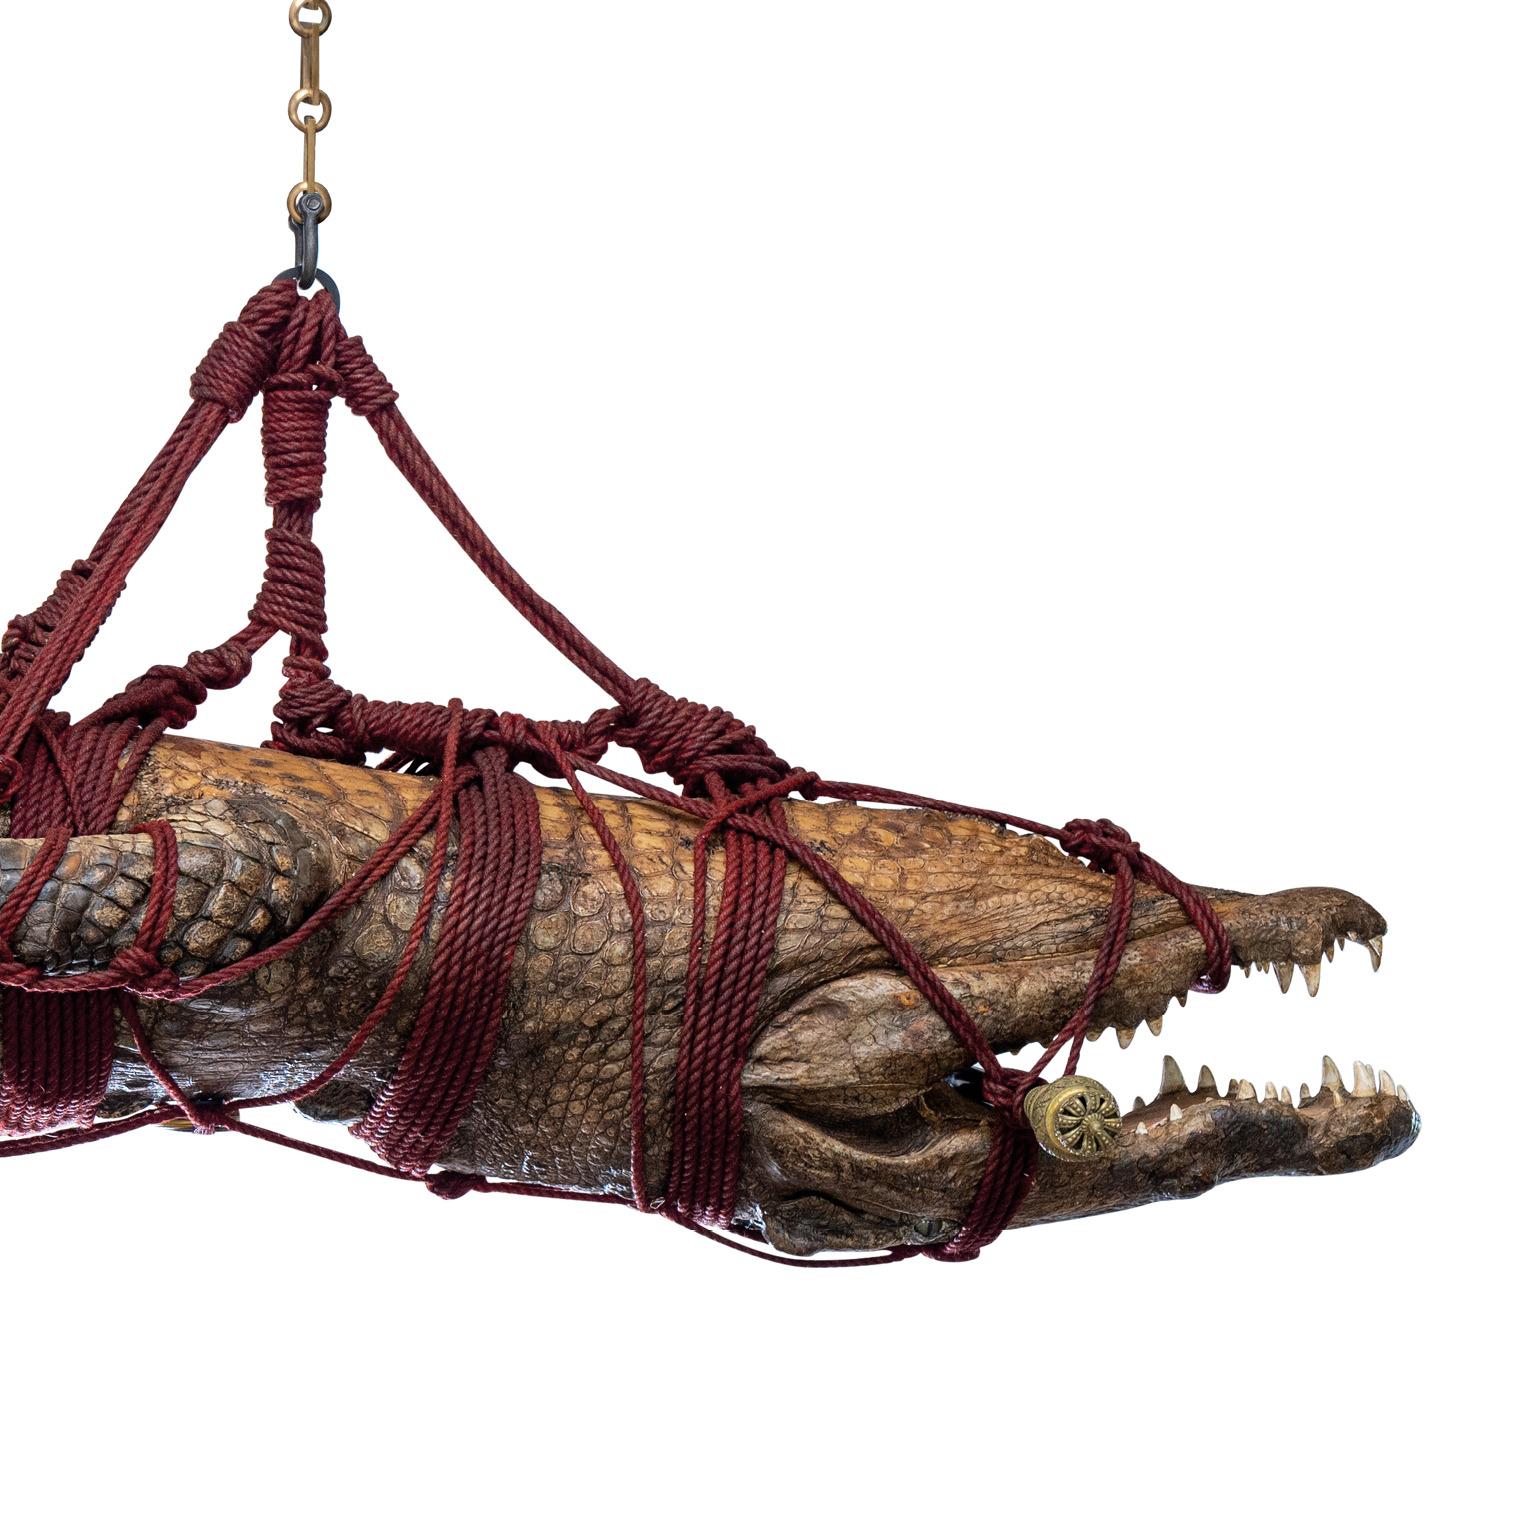 Fine Taxidermy 5 Meter Nile Crocodile by Sinke & Van Tongeren For Sale 7